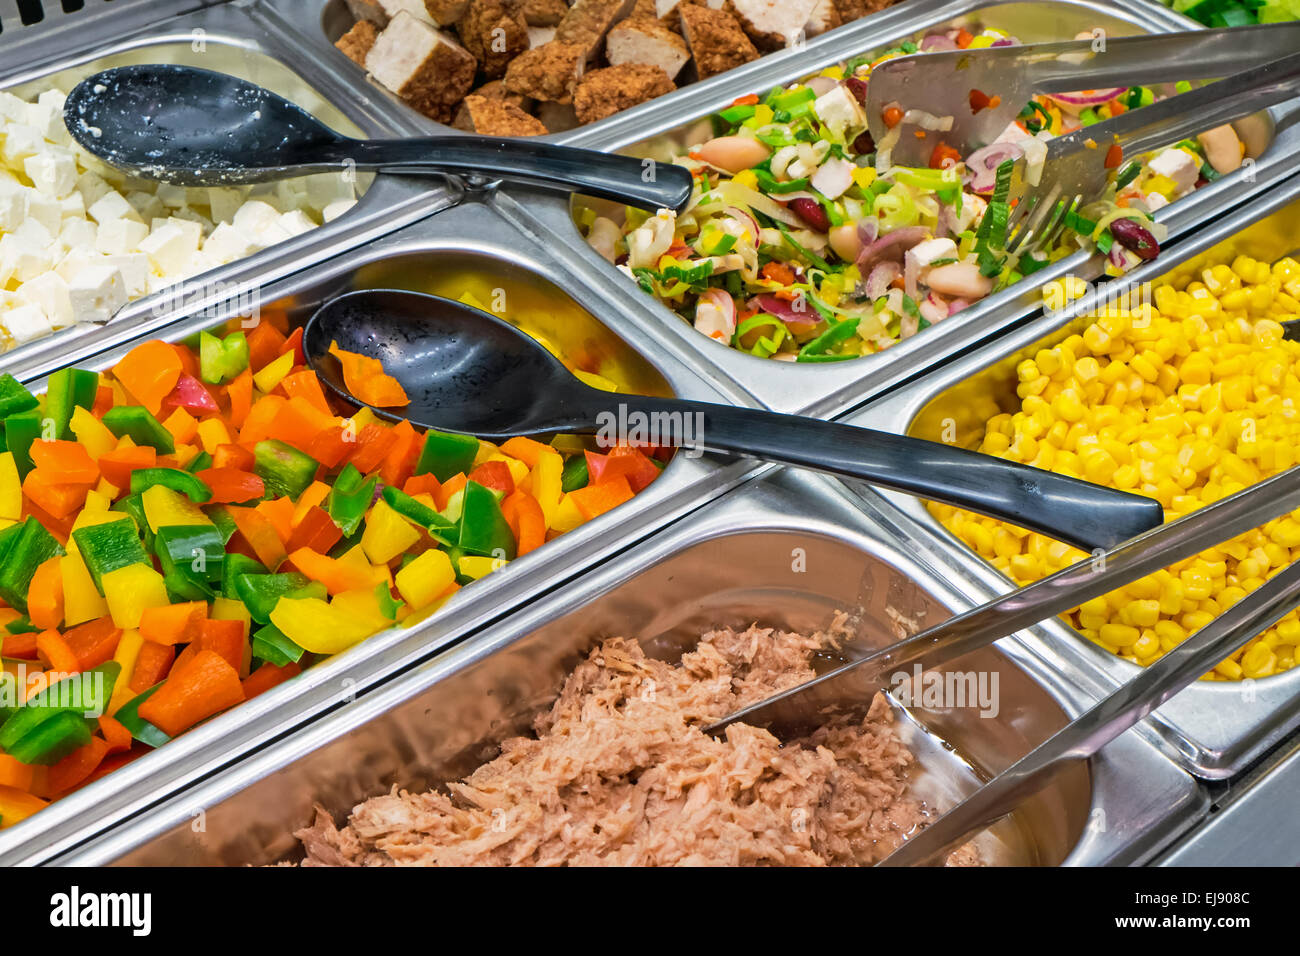 Salad variety at a buffet Stock Photo